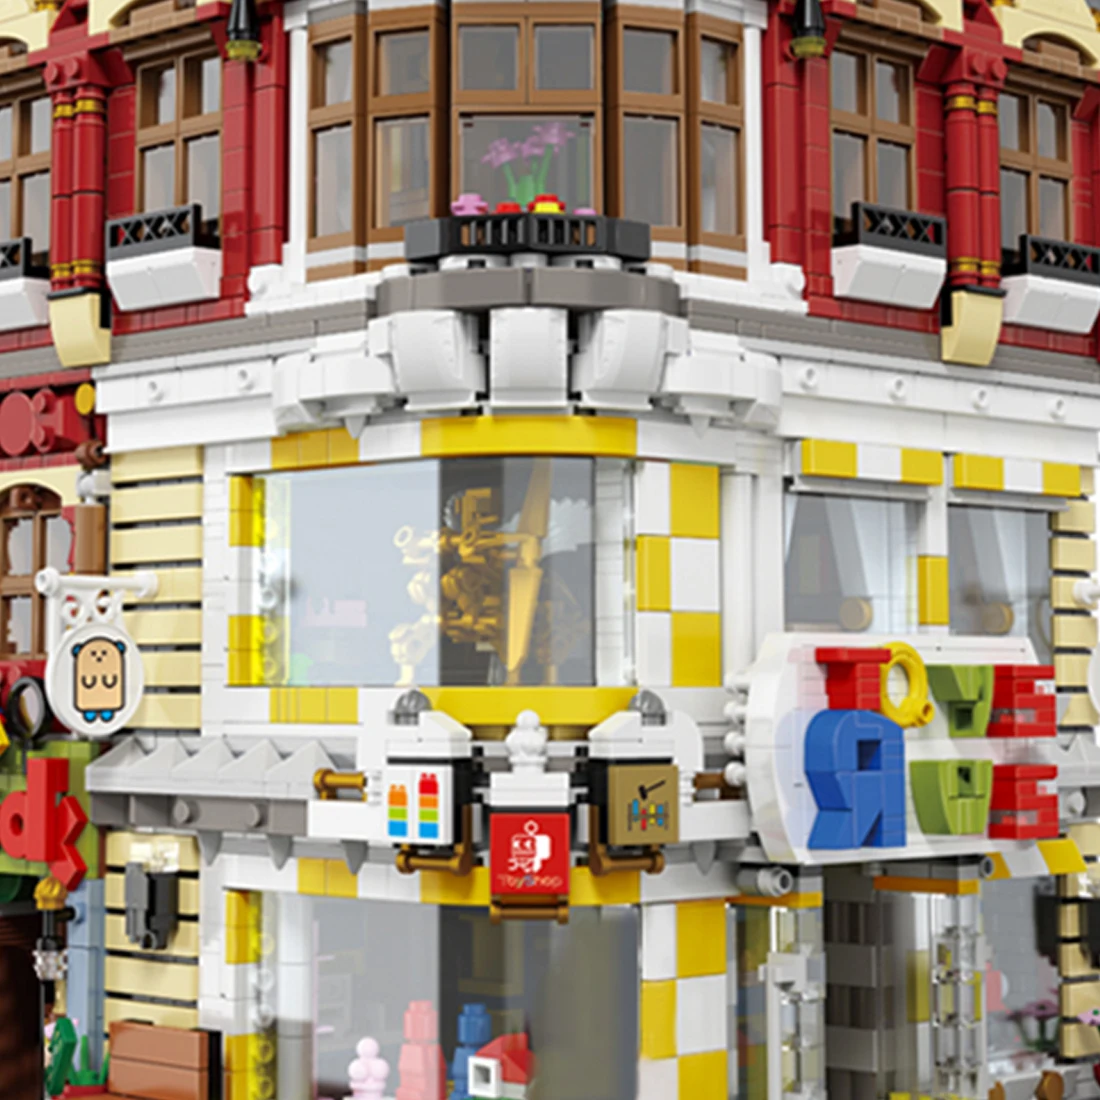 5491 шт. Moc головоломка игрушки книжный магазин стиль пейзаж архитектура сборки модели маленькие частицы строительные блоки Развивающие